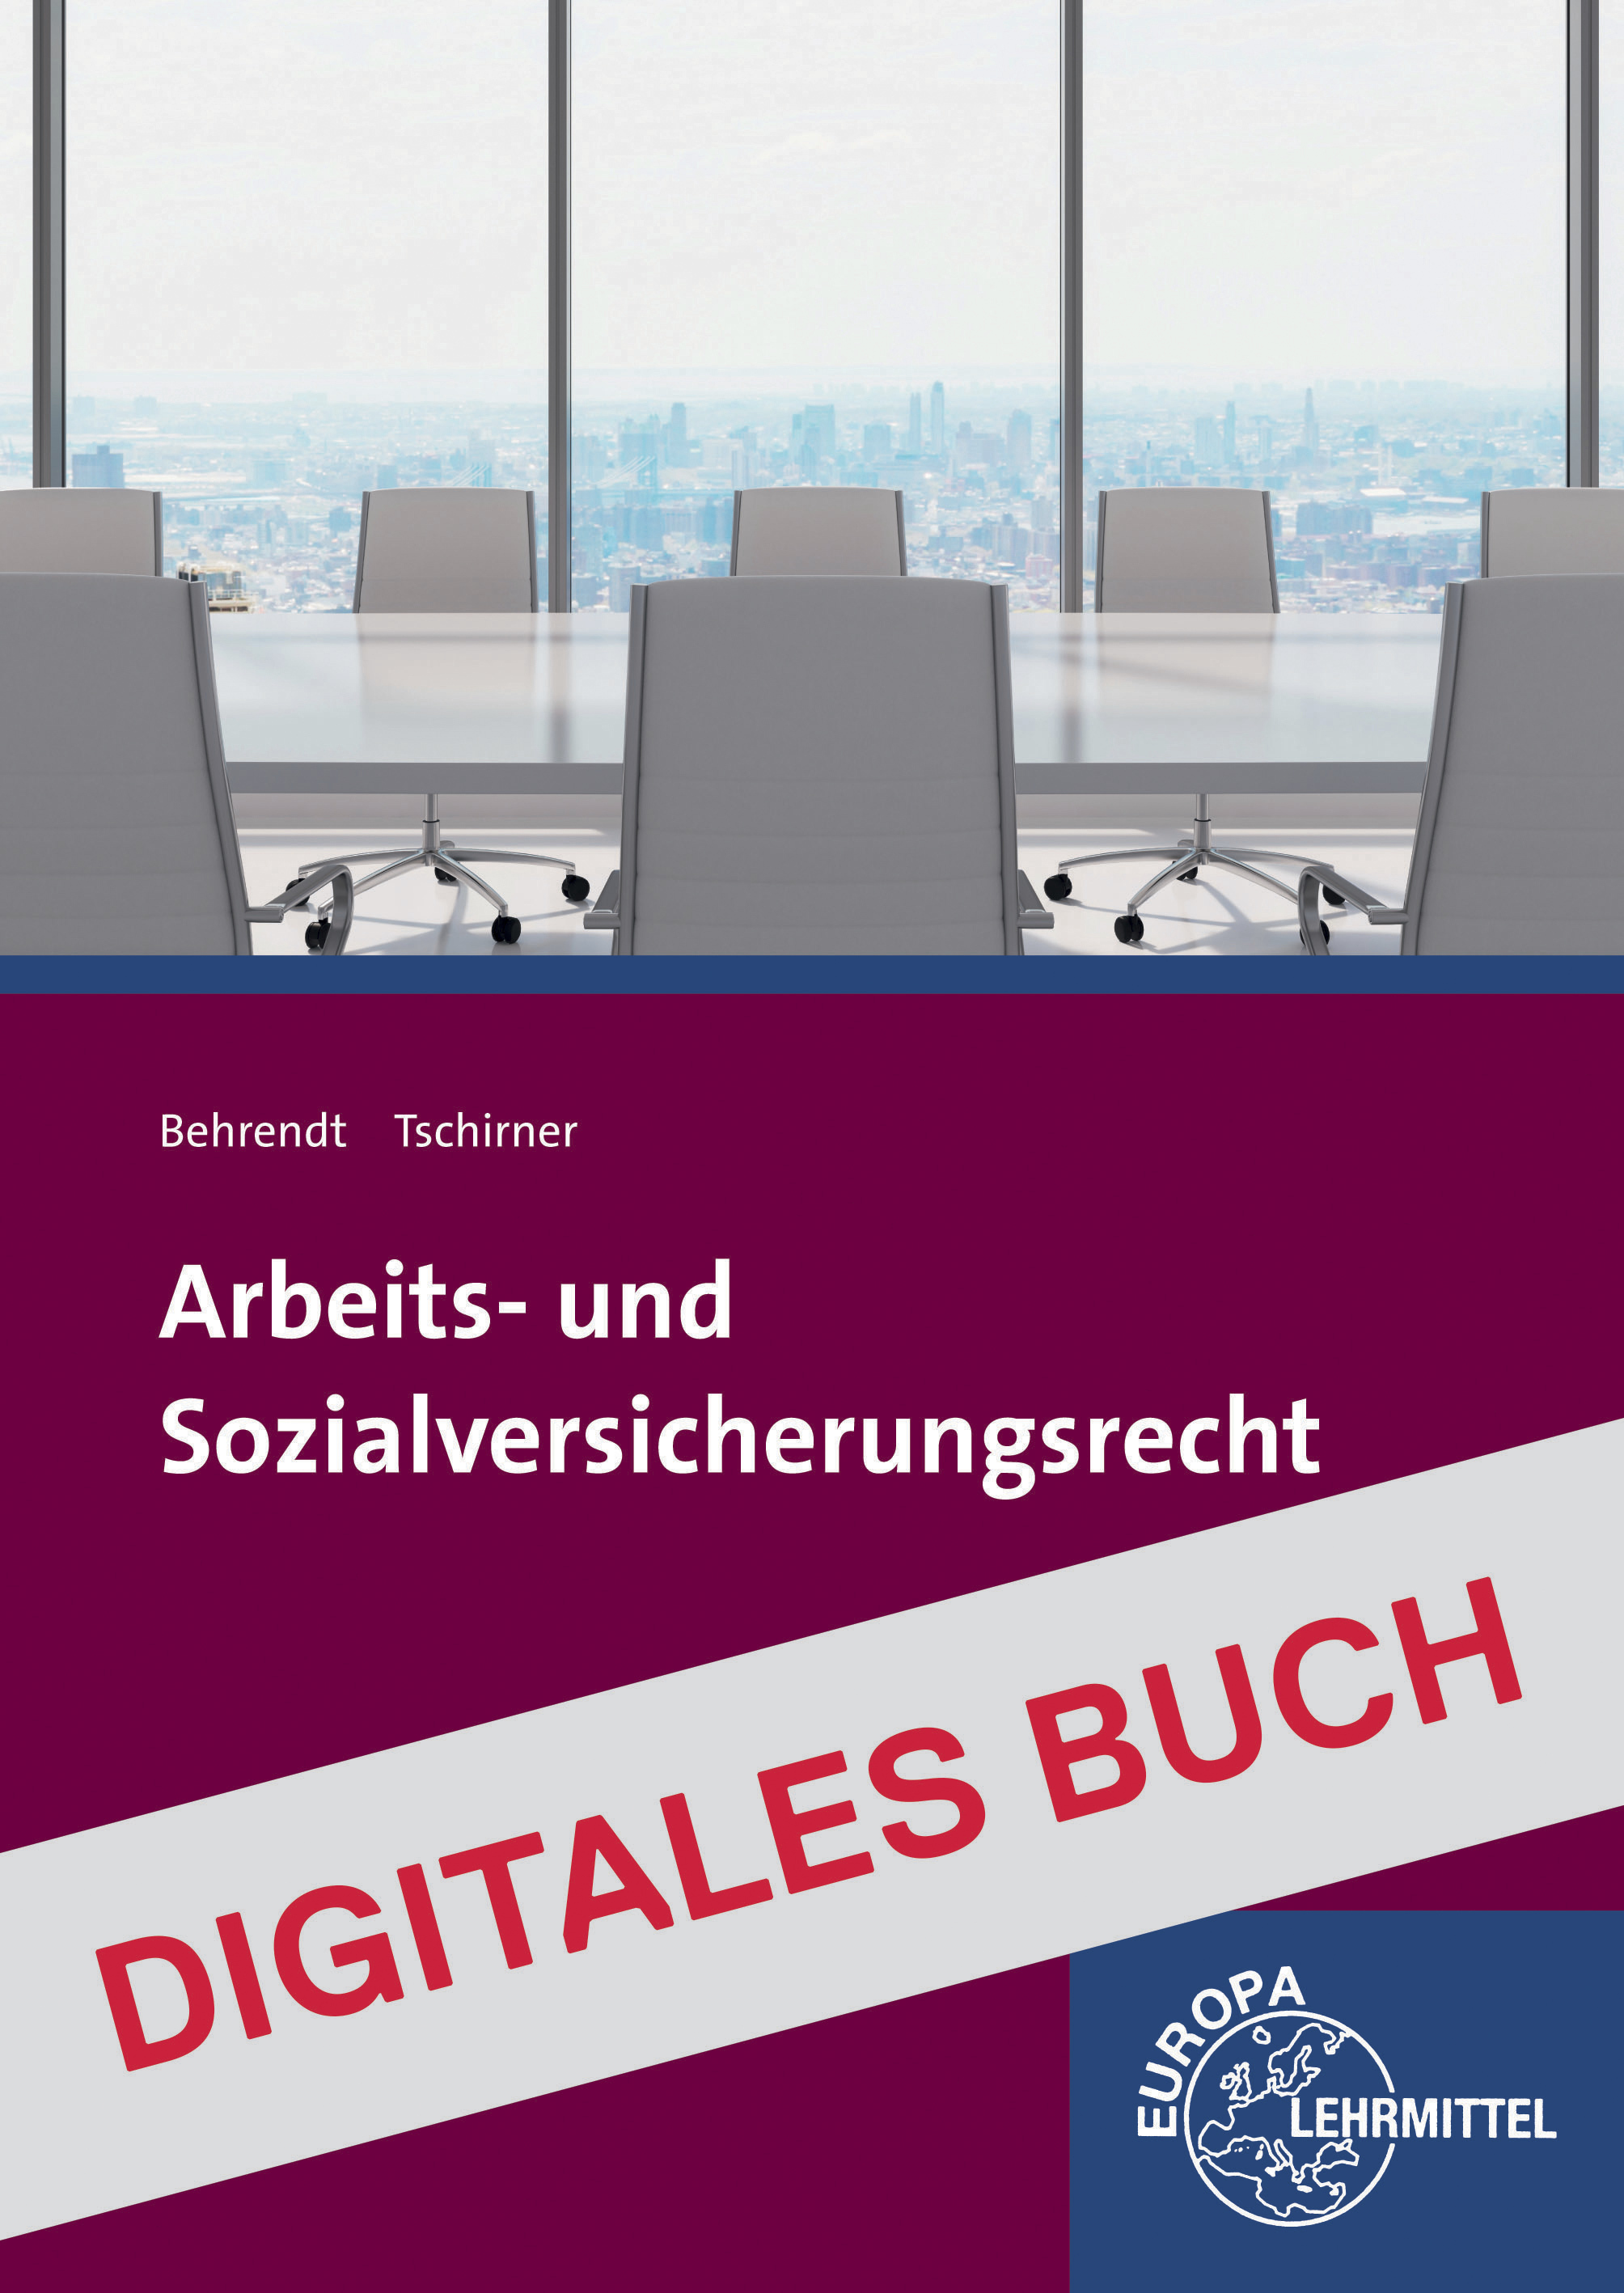 Arbeits- und Sozialversicherungsrecht - Digitales Buch